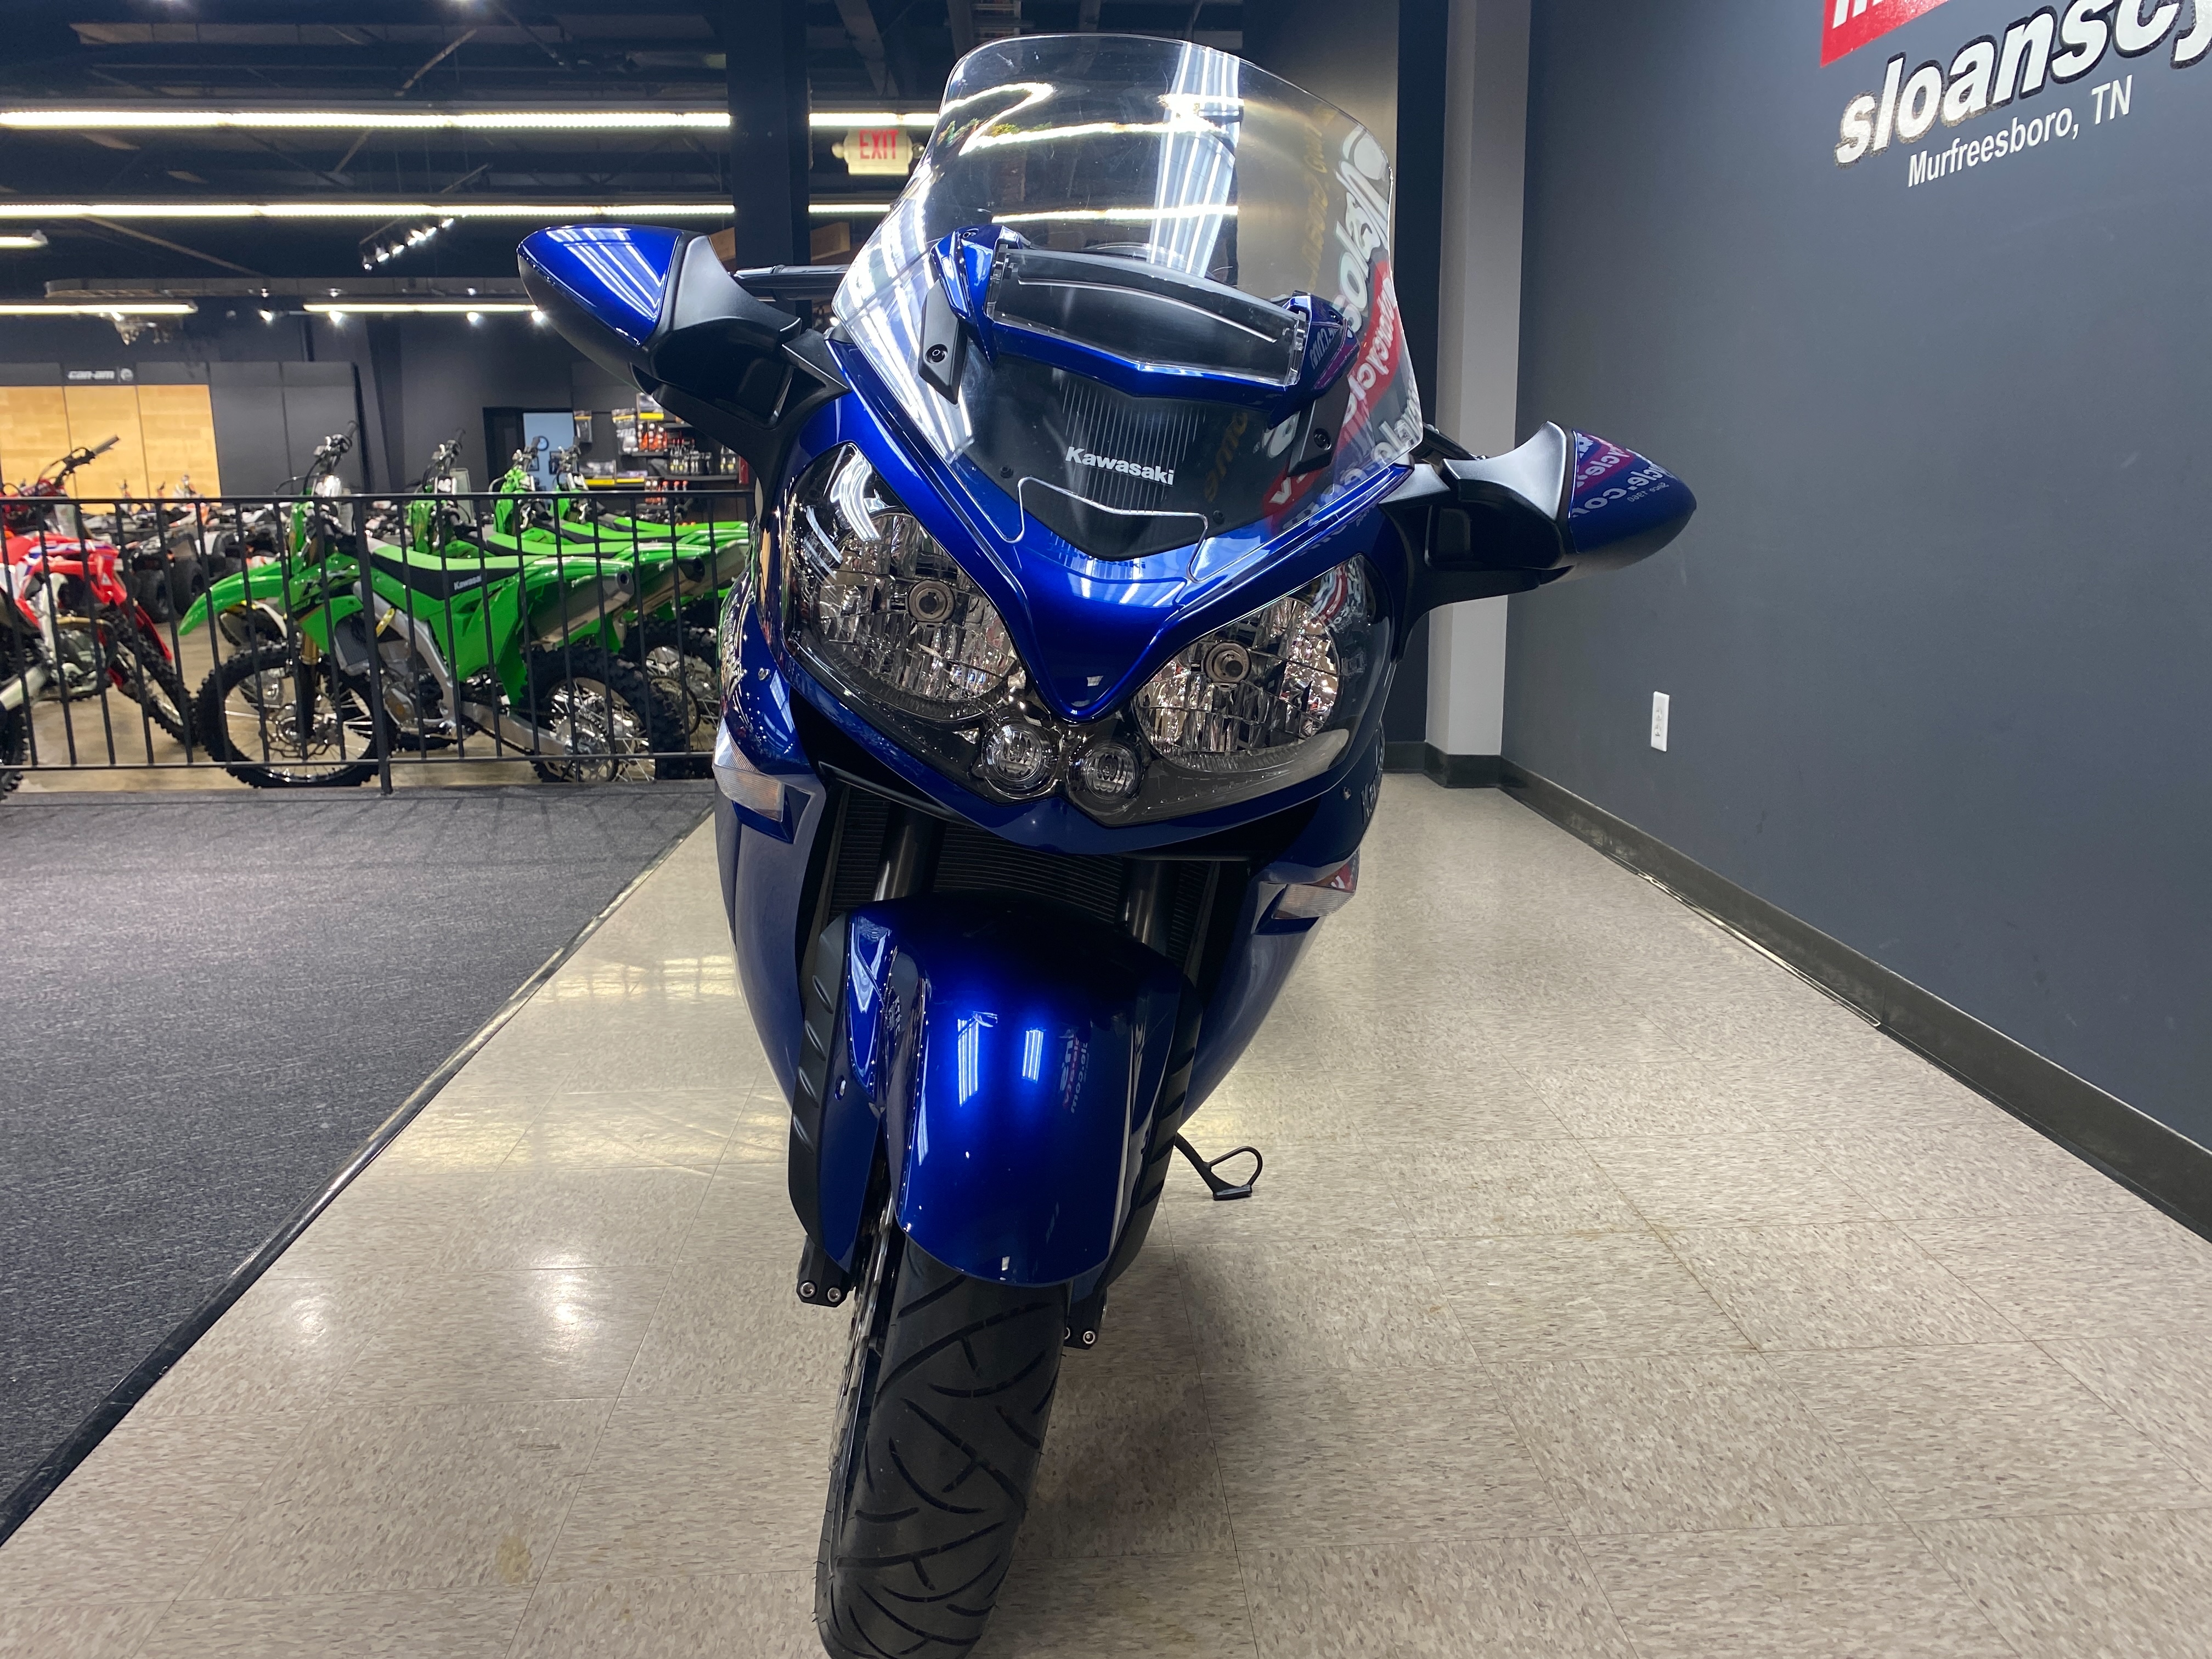 2017 Kawasaki Concours 14 ABS at Sloans Motorcycle ATV, Murfreesboro, TN, 37129